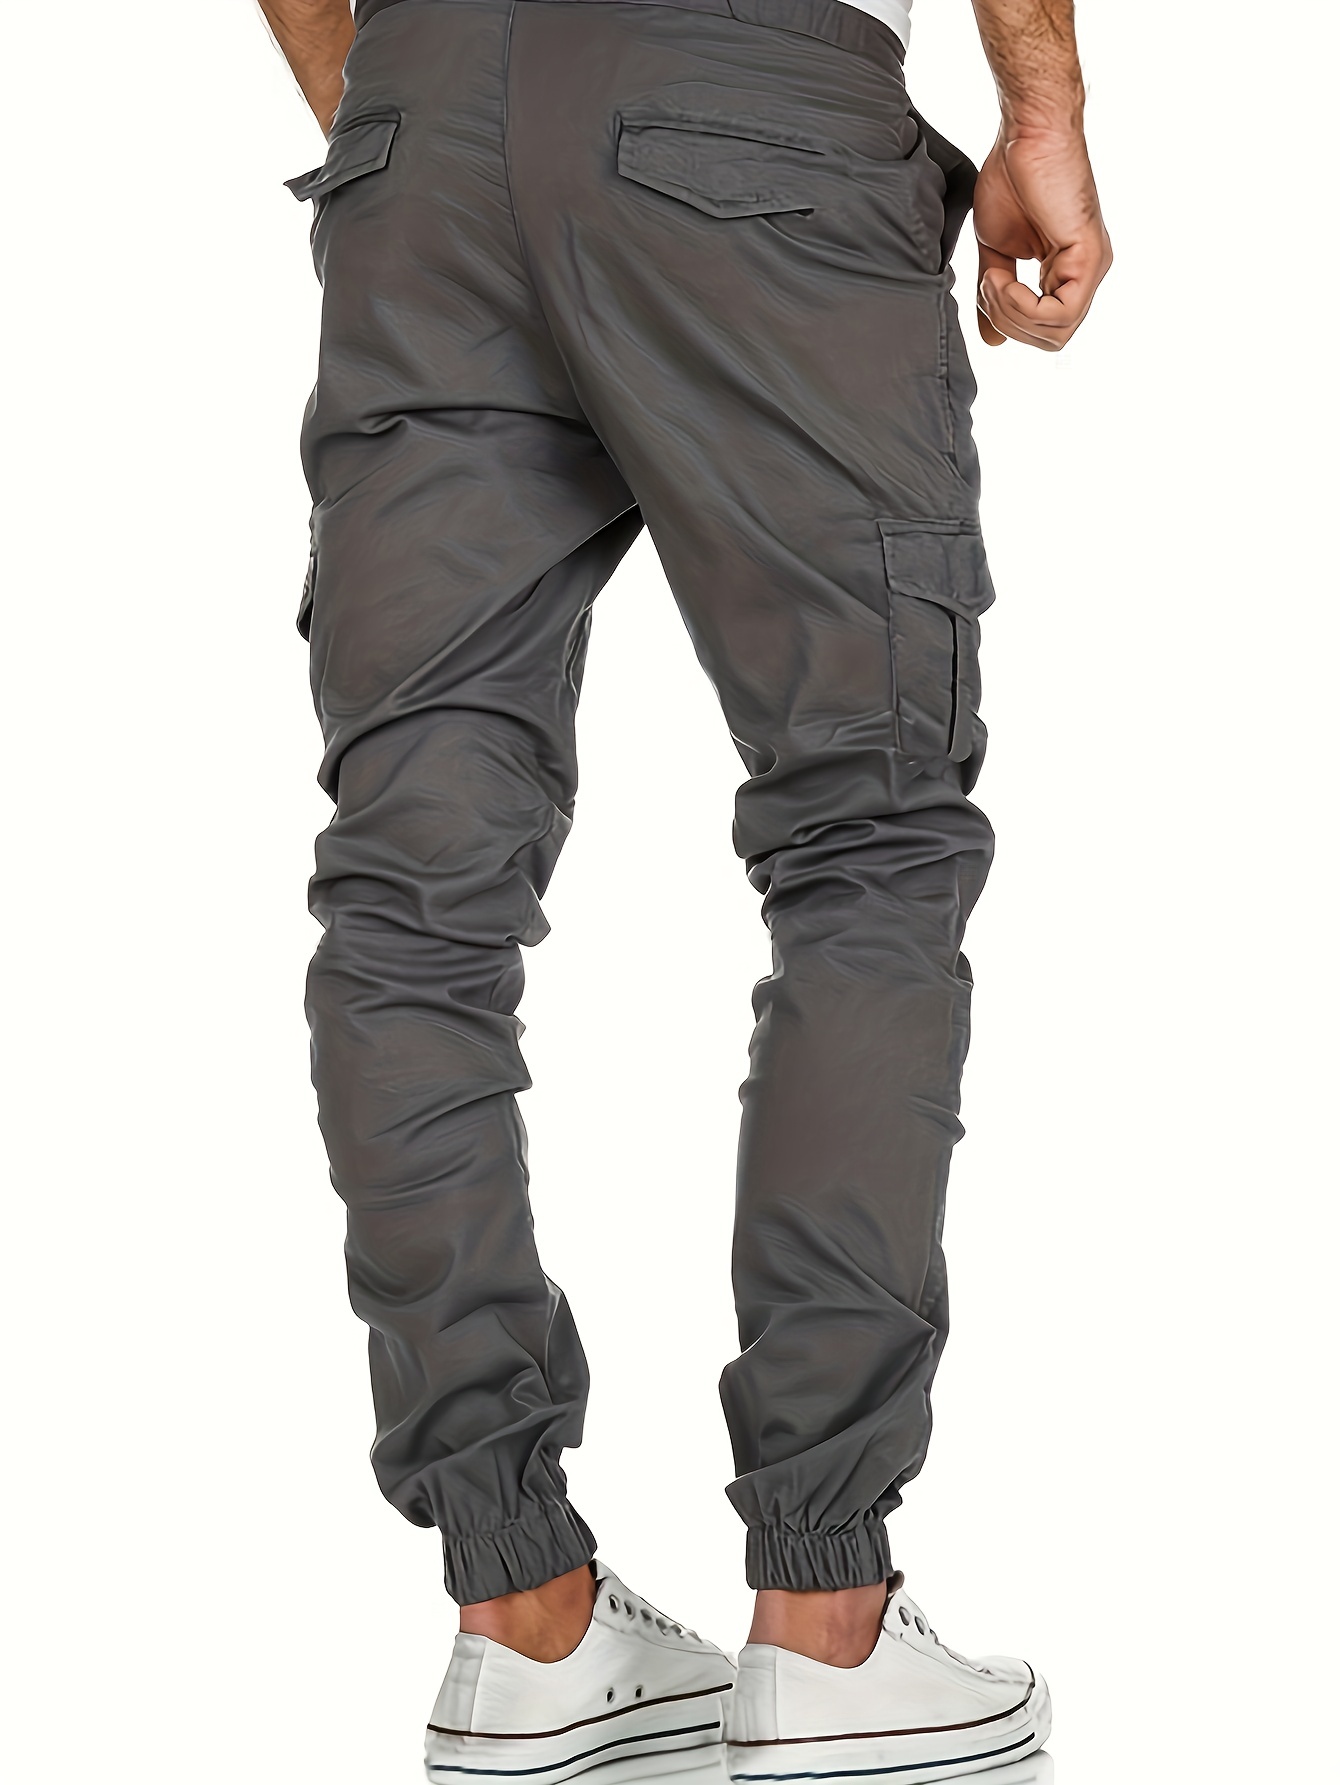 Pantalones tipo cargo para hombre, casuales, pantalones atléticos,  holgados, pantalones de senderismo para uso al aire libre, con bolsillos